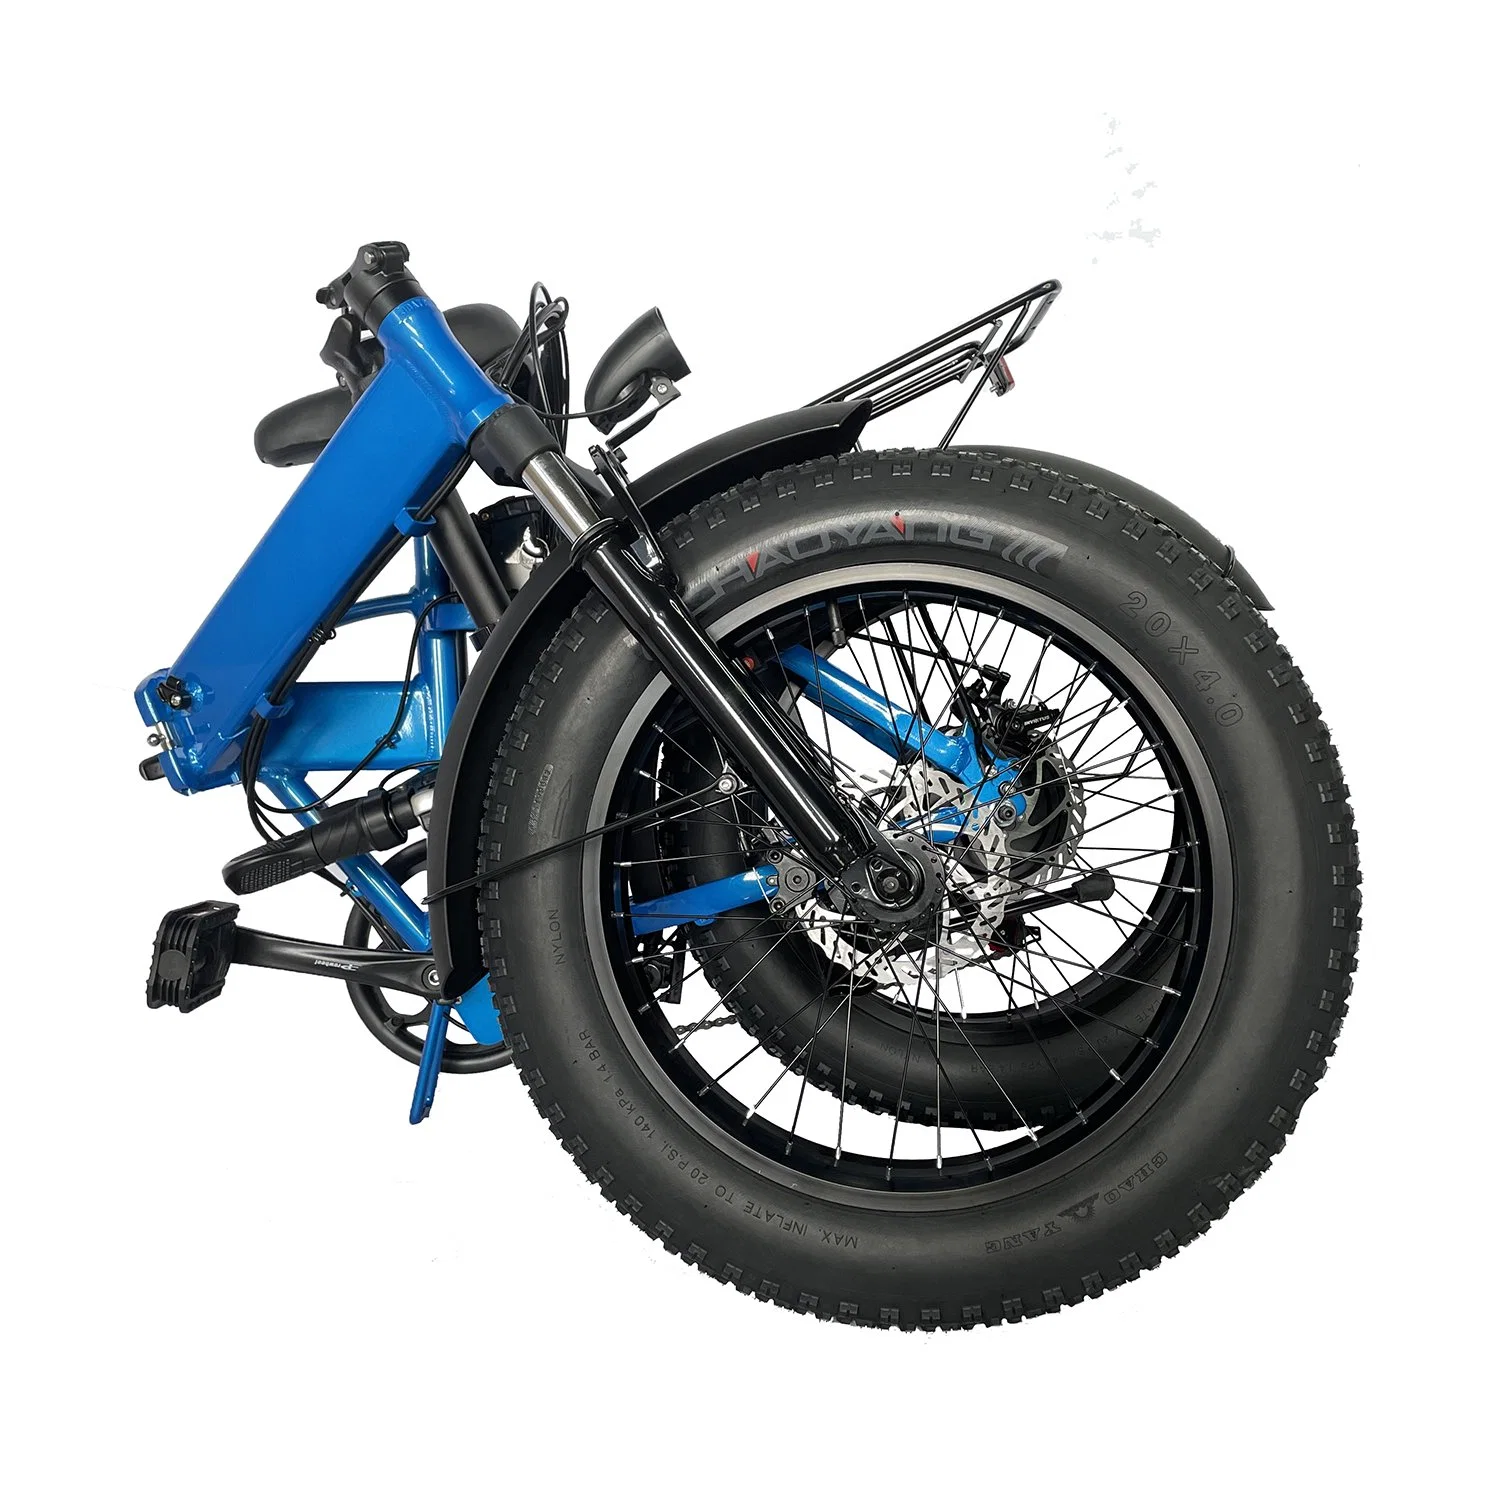 Bicicleta elétrica de velocidade mais rápida 20 * pneu gordo de 4.0 polegadas dobra a eBike Bateria dupla de 500 W, 750 W, 1000 W, outra e de elevada potência para bicicleta Bicicleta de carga